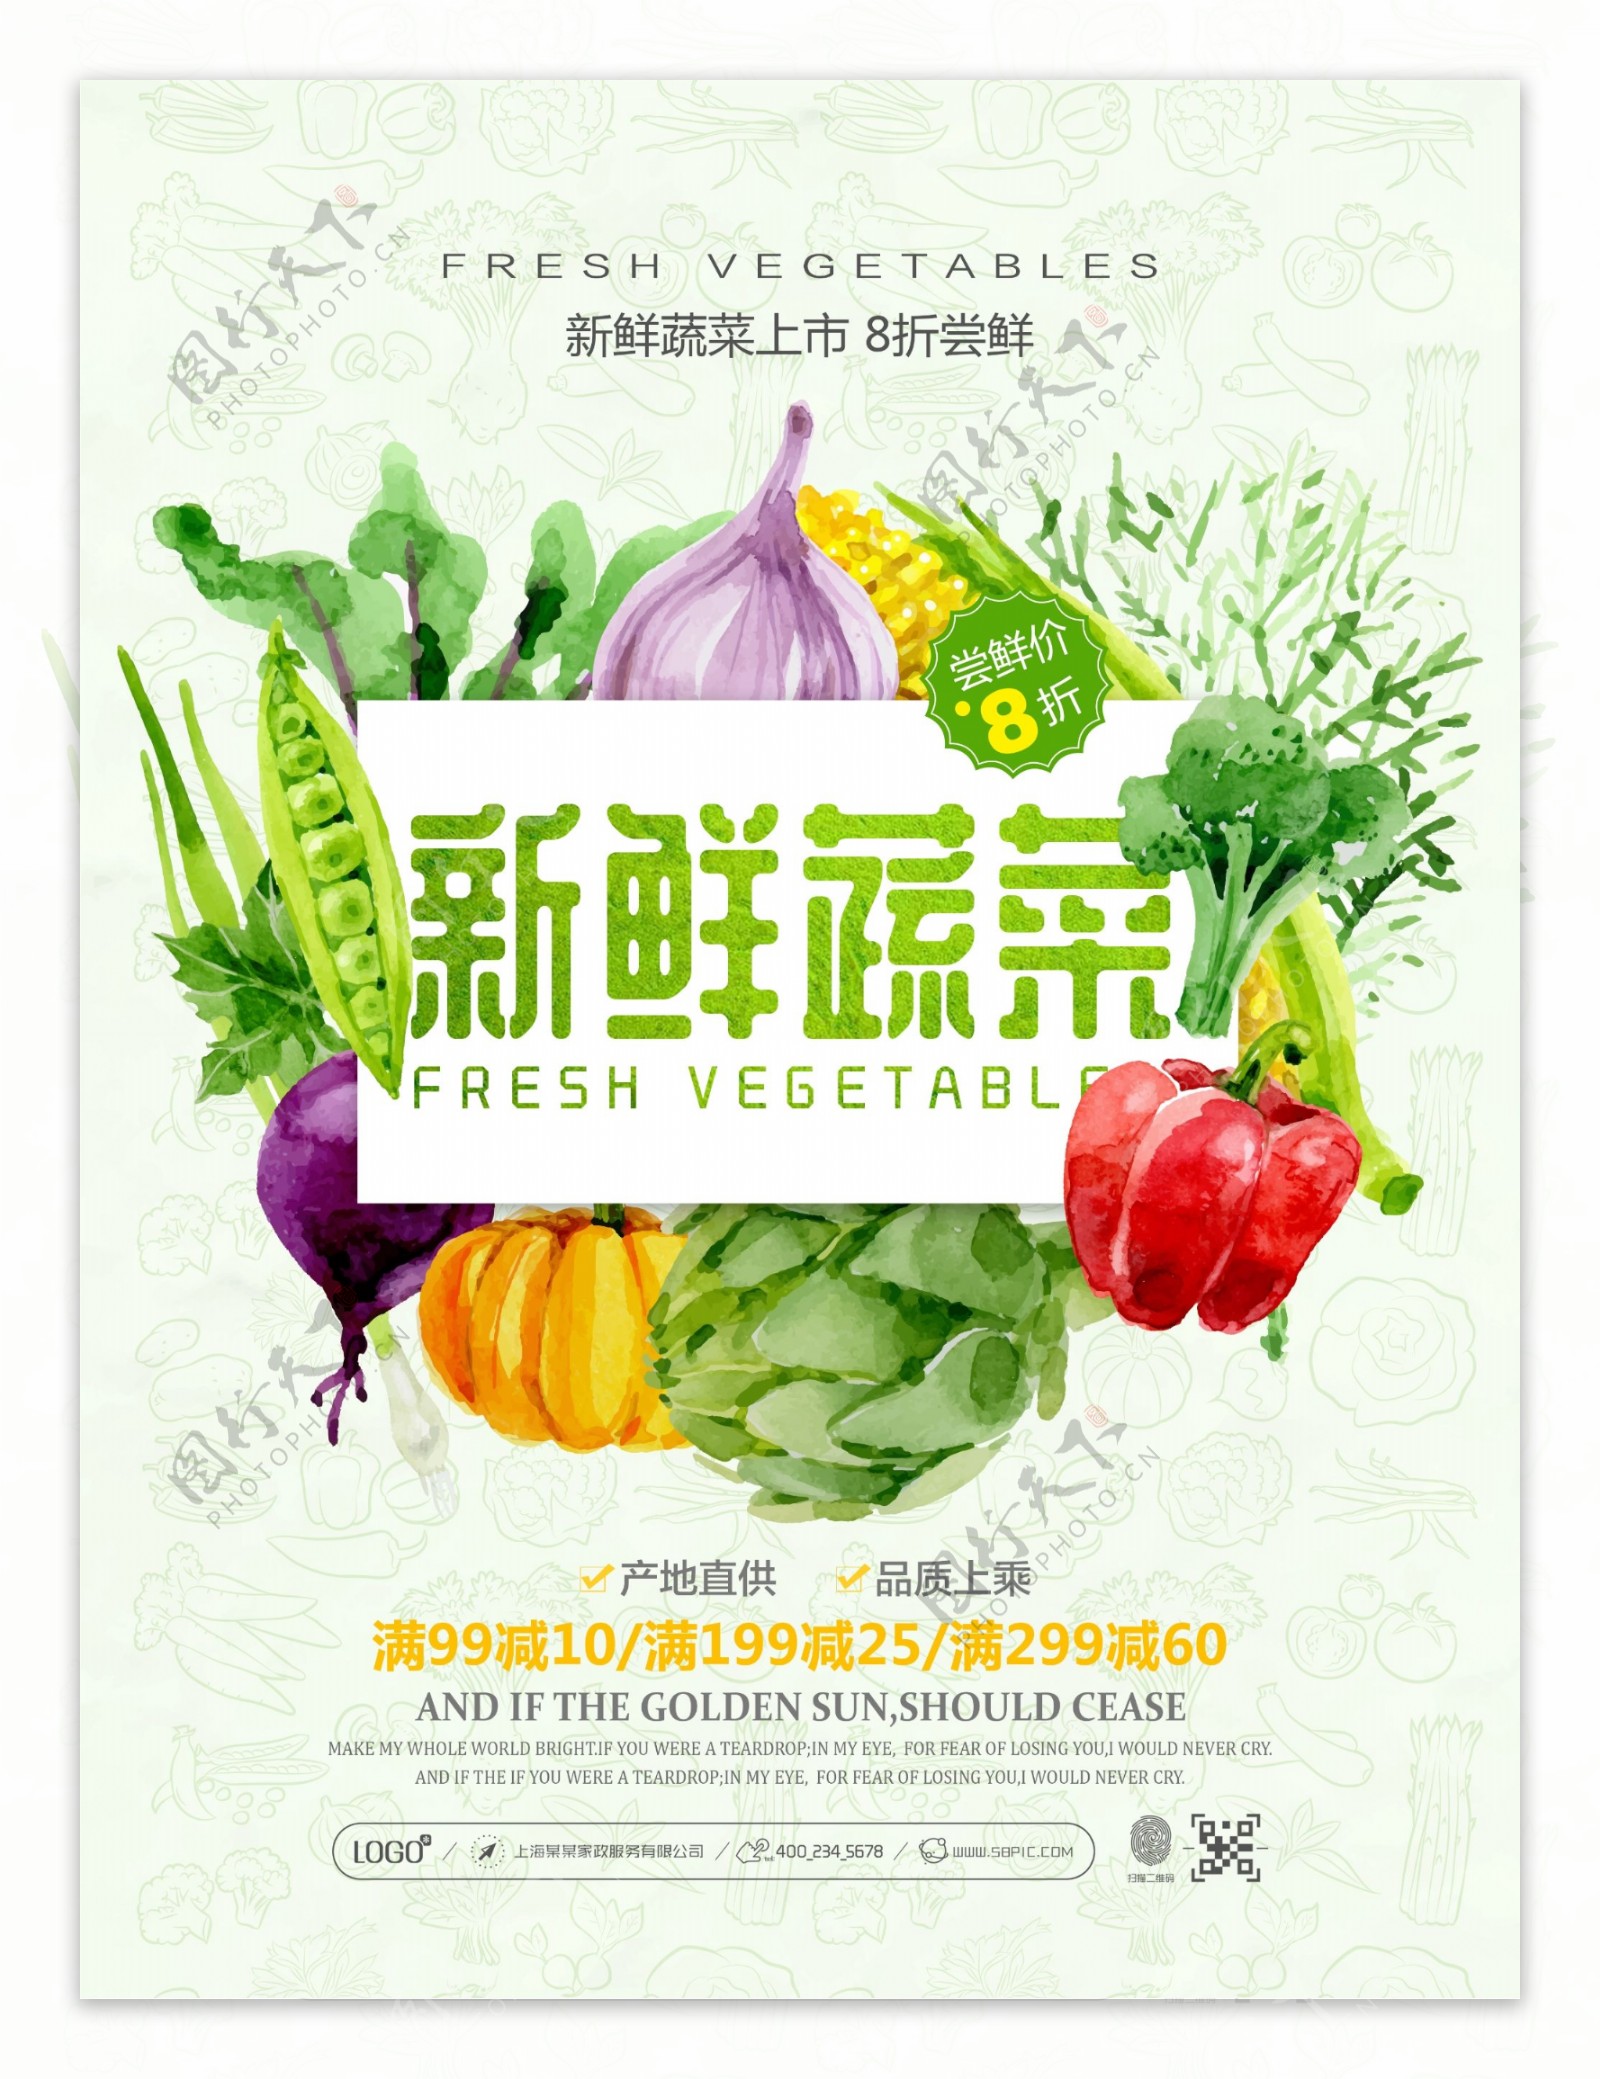 清新自然超市新鲜蔬菜促销宣传海报设计